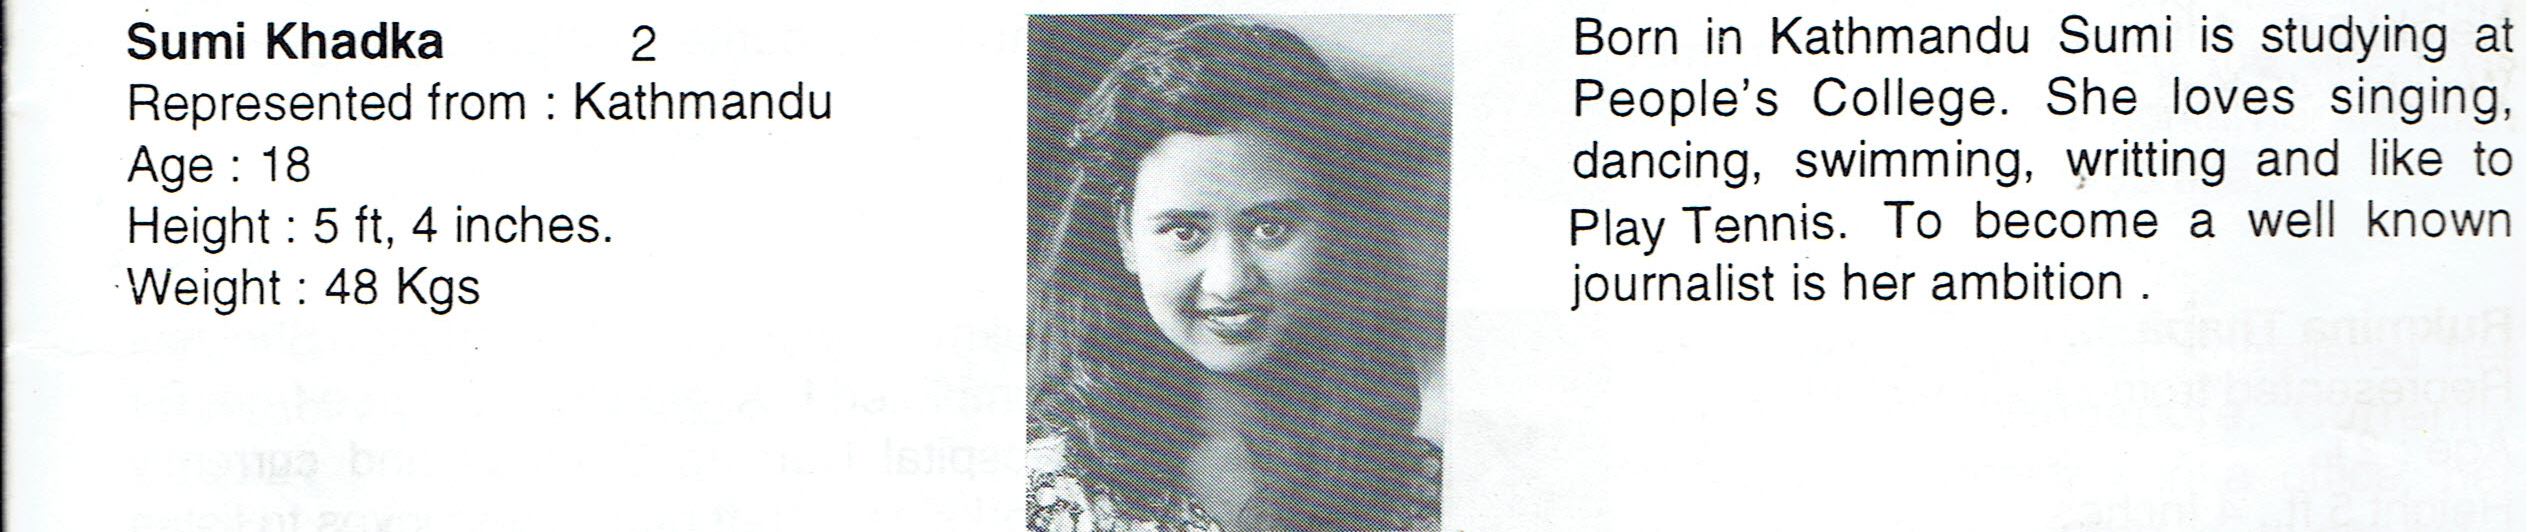 Sumi Khadka